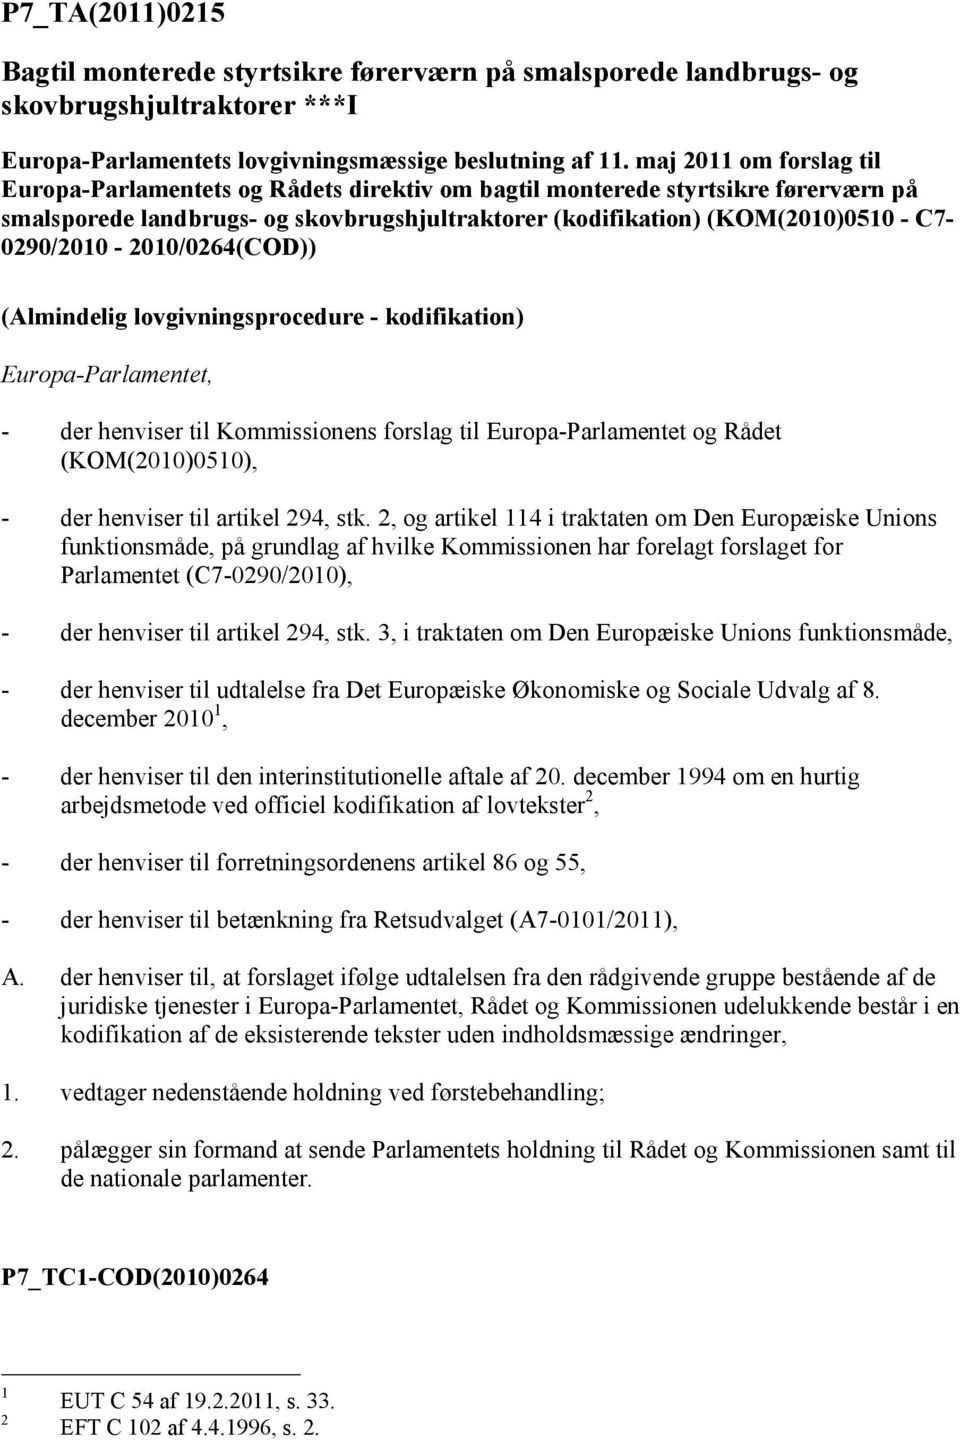 C7-0290/2010-2010/0264(COD)) (Almindelig lovgivningsprocedure - kodifikation) Europa-Parlamentet, - der henviser til Kommissionens forslag til Europa-Parlamentet og Rådet (KOM(2010)0510), - der